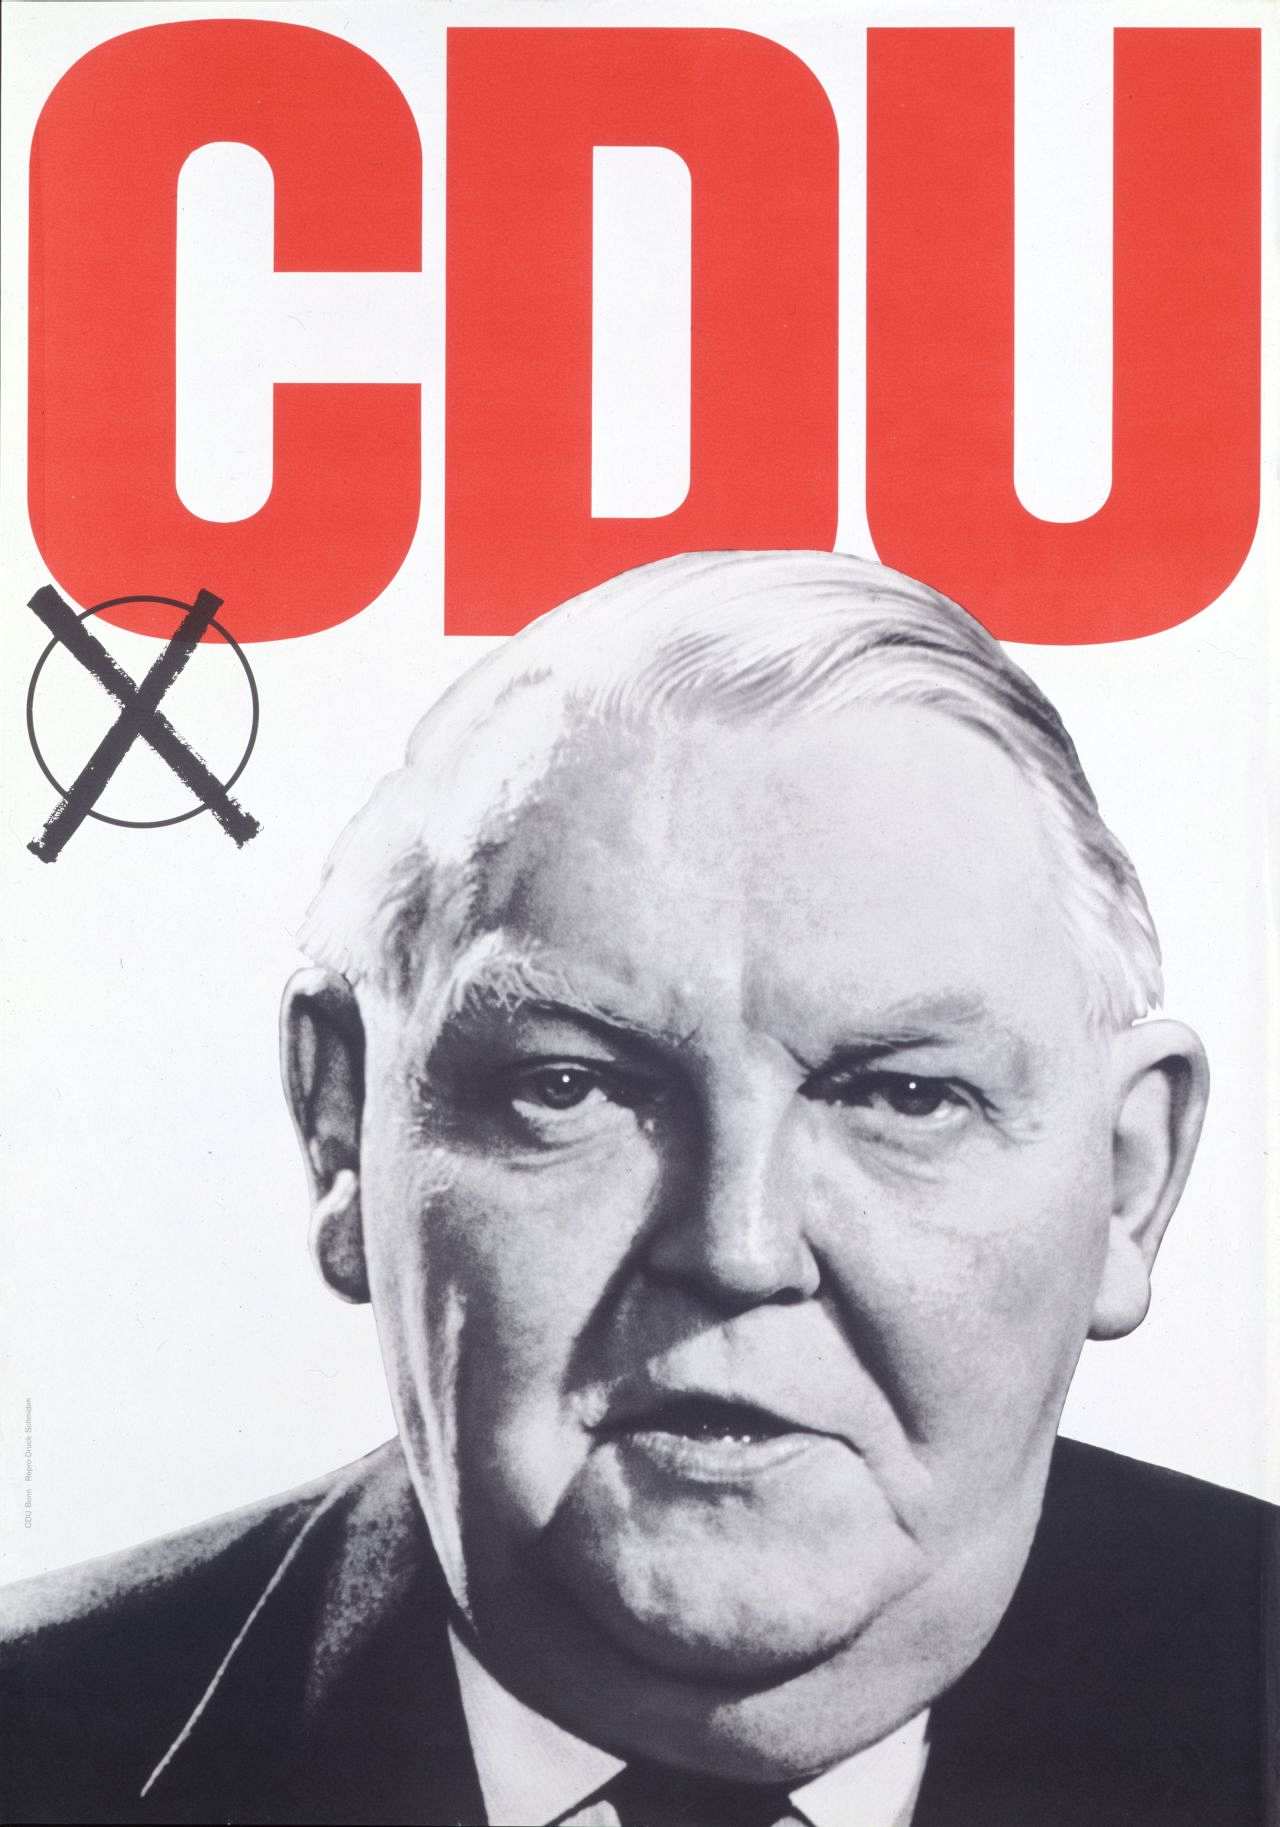 Weißes Blatt mit schwarz-weiß-Portraitfoto Erhards. Text (rot): CDU, (darunter angekreuzt im Kreis).